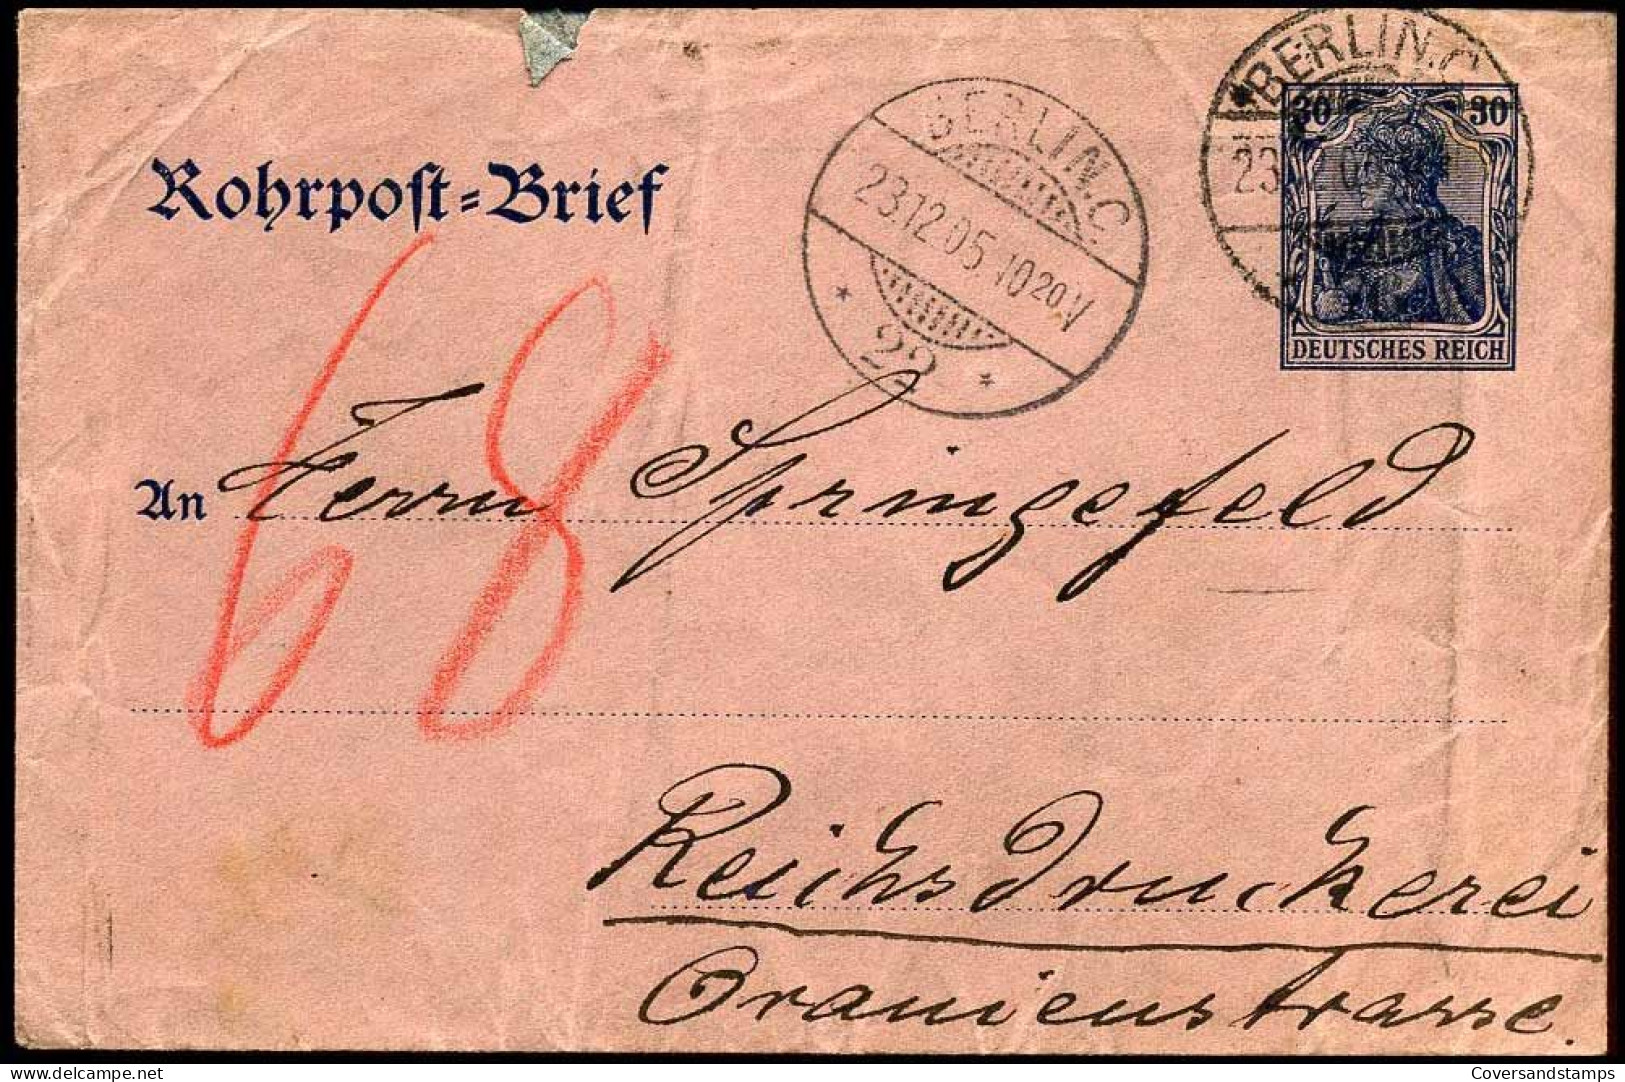 Rohrpost Brief - Berlin - Reichsdruckerei - Omslagen